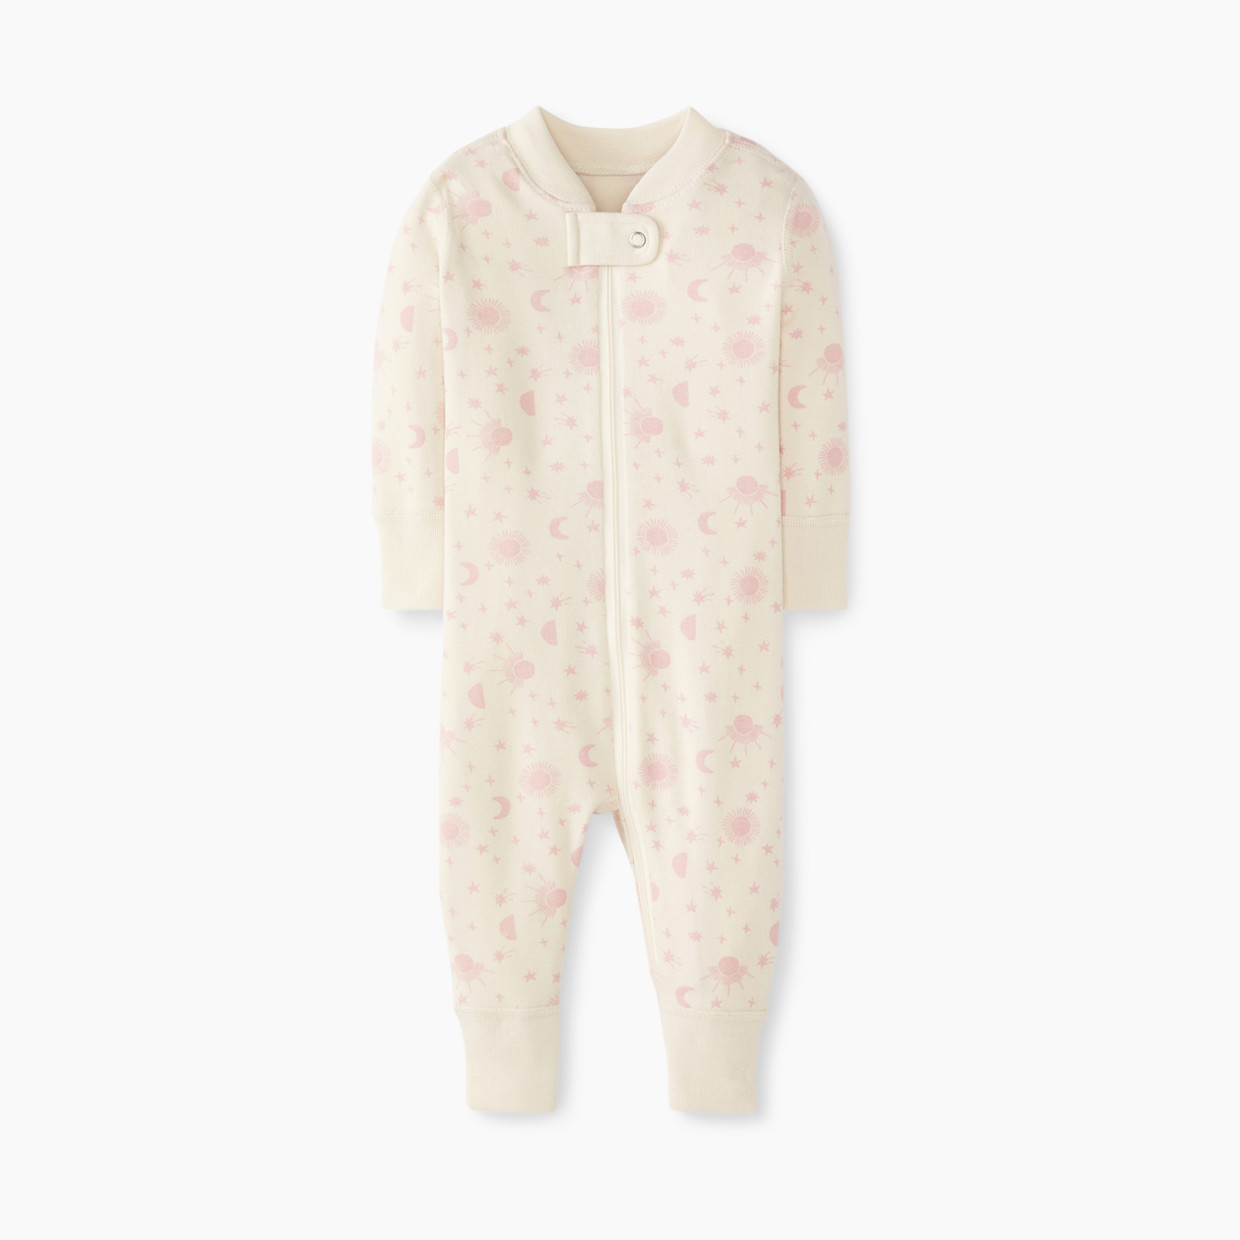 Hanna Andersson Baby Layette Zip Sleeper - Blush Pink, 0-3 Months.